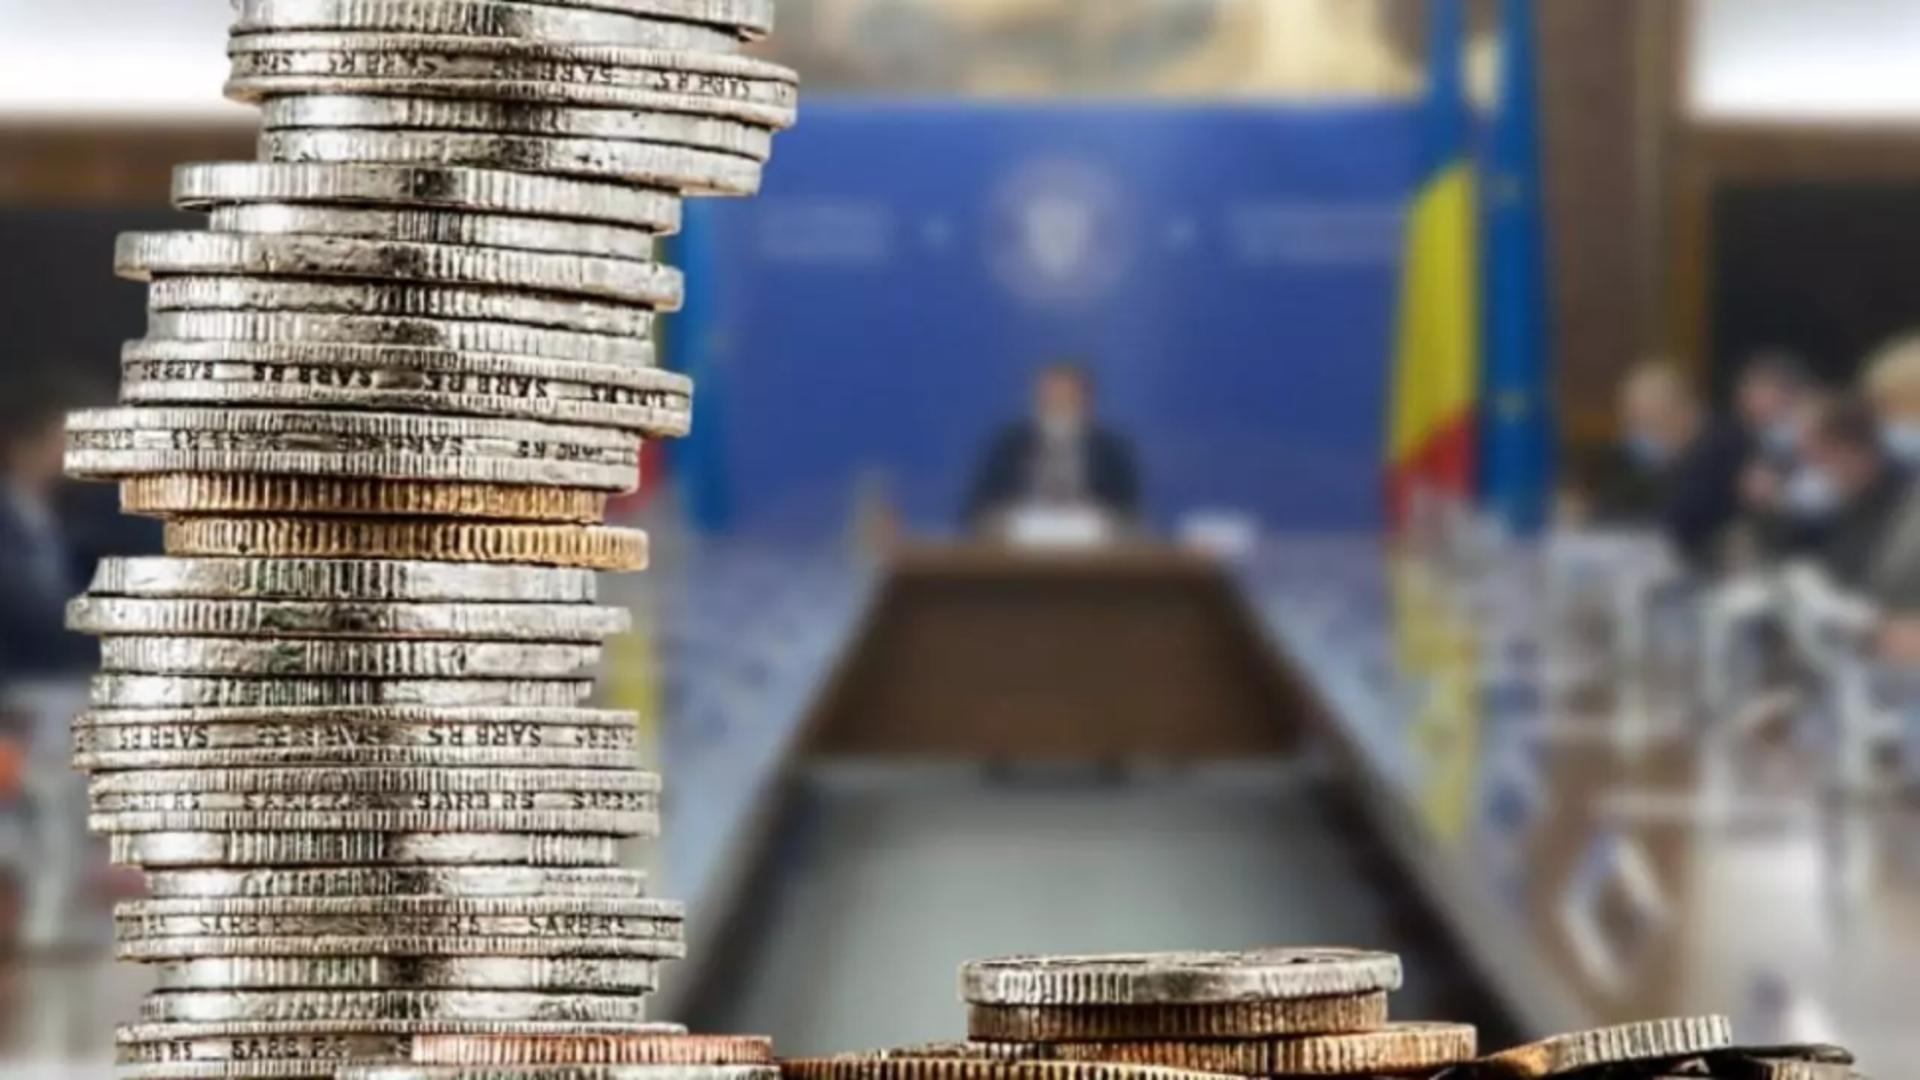 Cheltuielile nesăbuite ale Guvernului bagă România în colaps. Foto/Arhivă